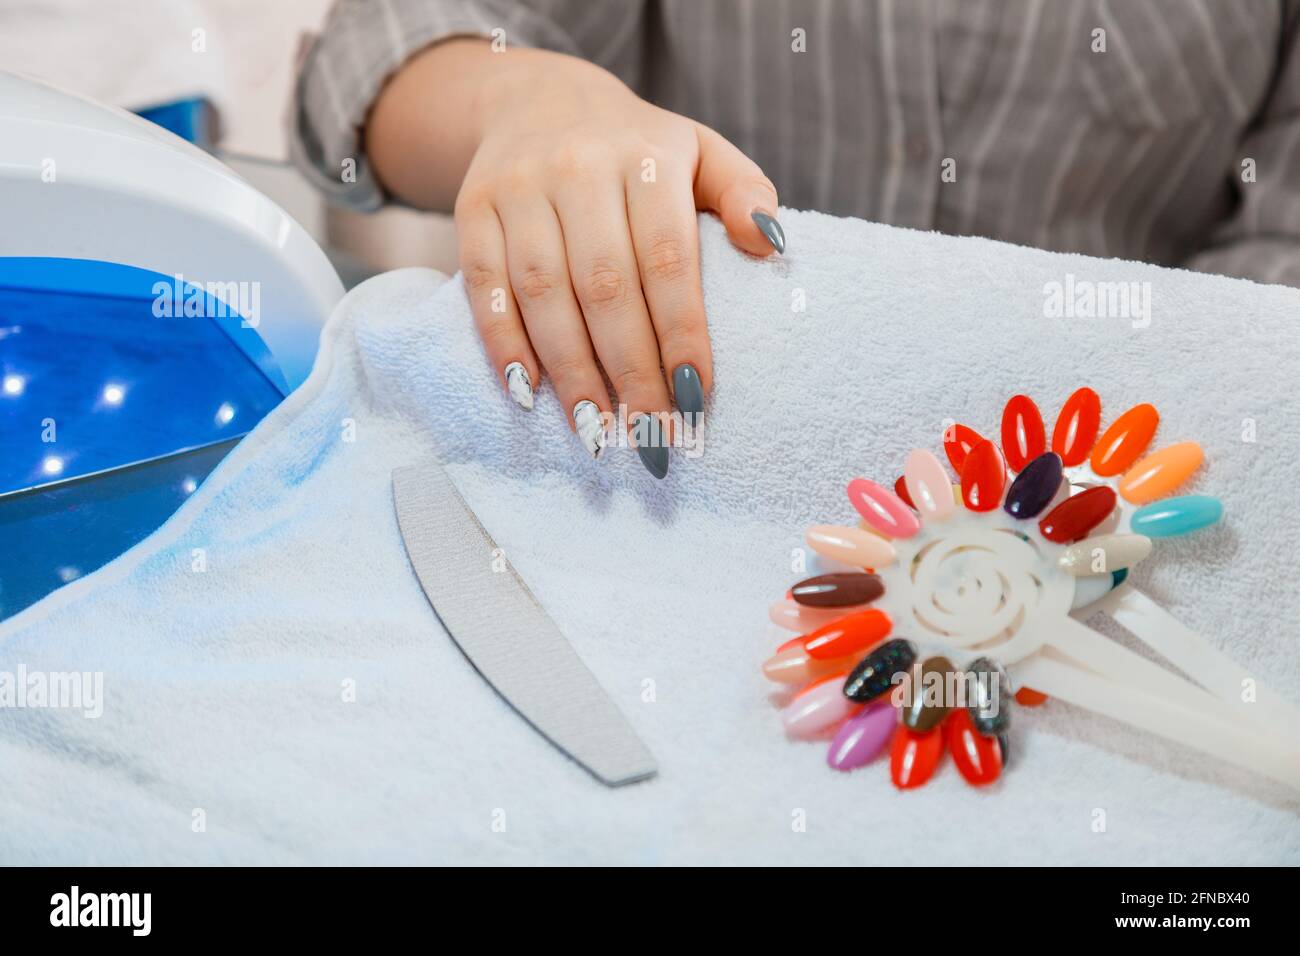 Femme avec des ongles acryliques artificiels ramasse une nouvelle couleur de polissage lors de la procédure de manucure. Traitement de manucure dans le salon de beauté sur une serviette blanche. Hygiène Banque D'Images